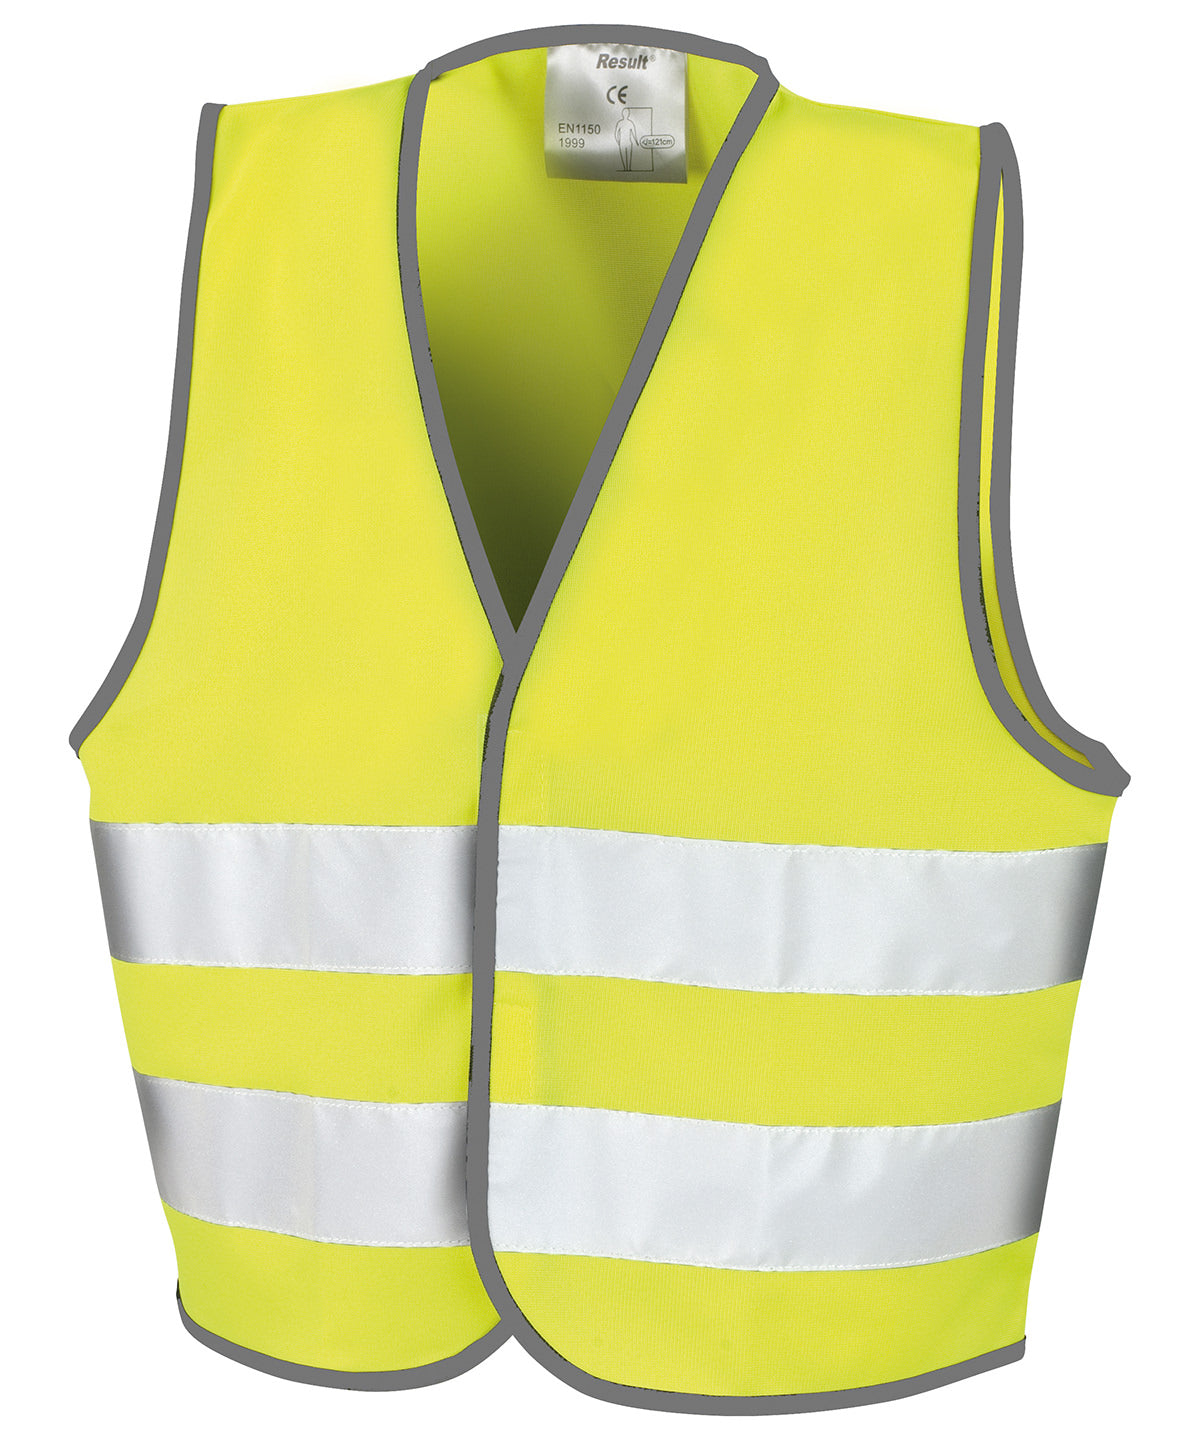 Core junior safety vest